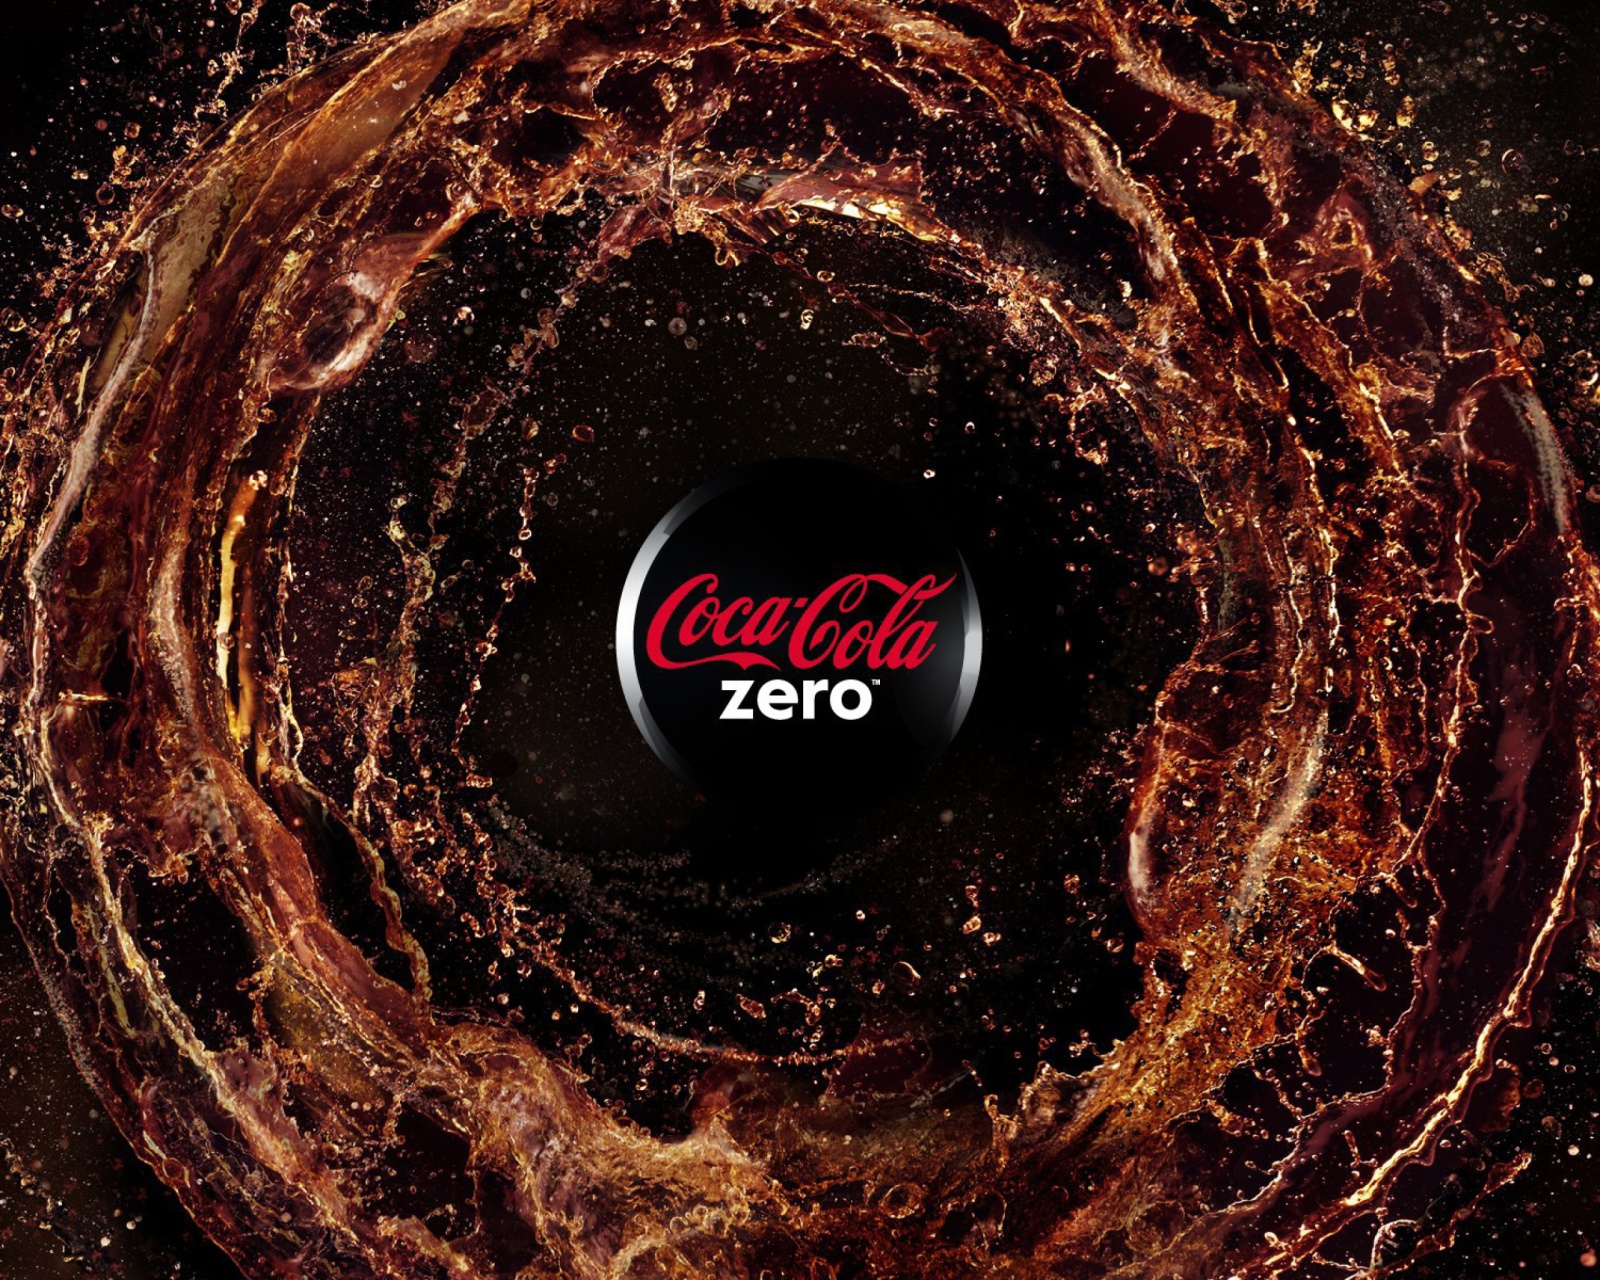 Sfondi Coca Cola Zero - Diet and Sugar Free 1600x1280